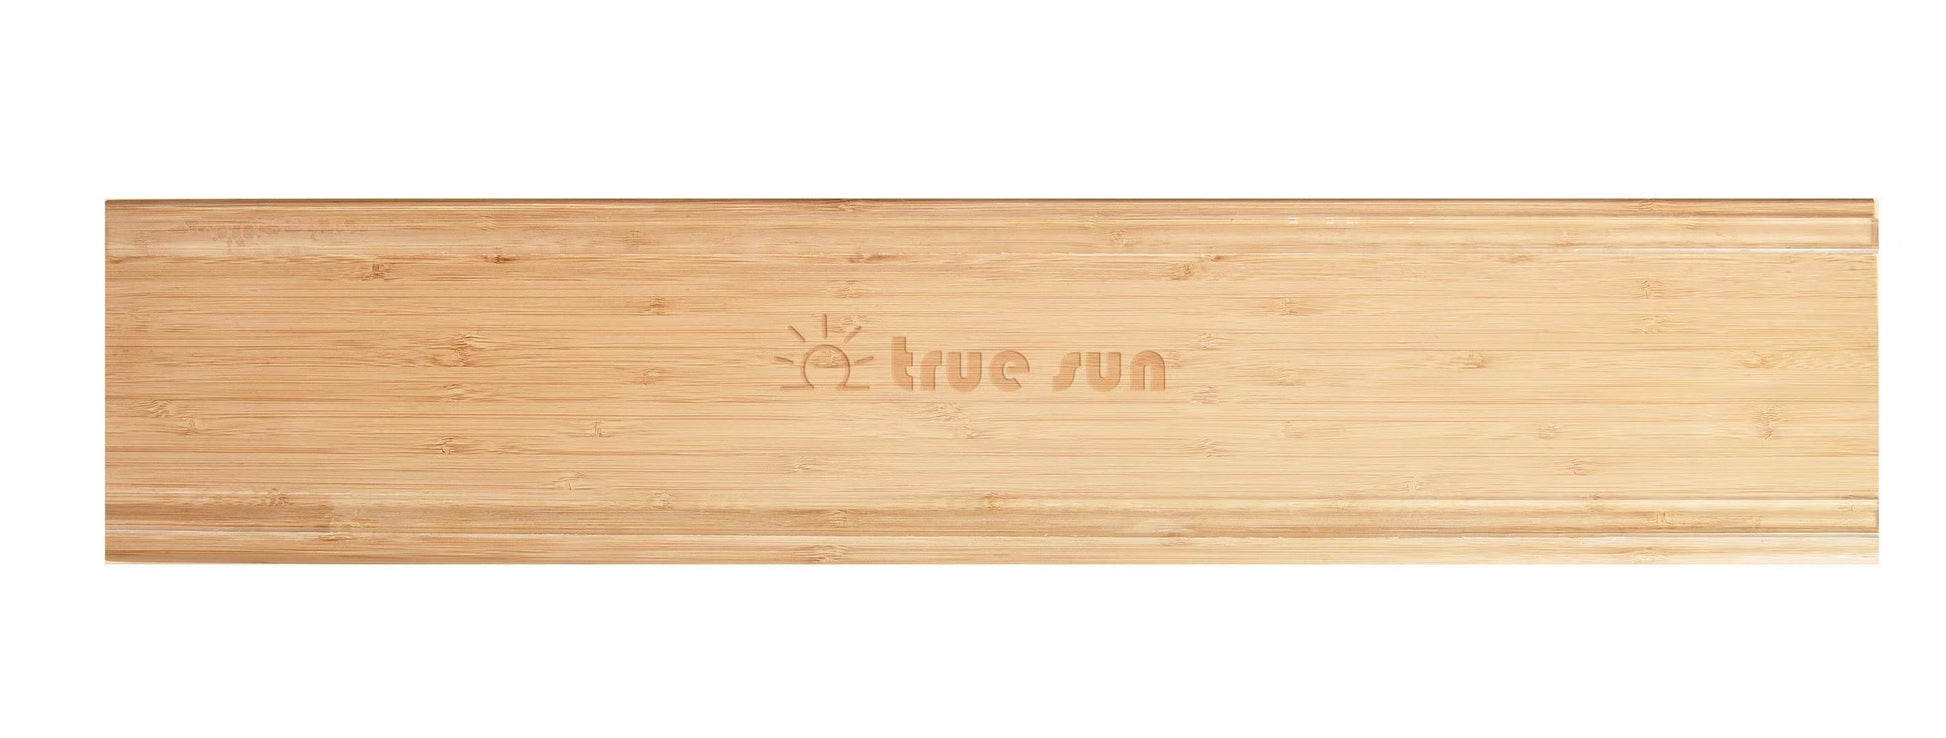 Cucumber Cutting board - True Sun